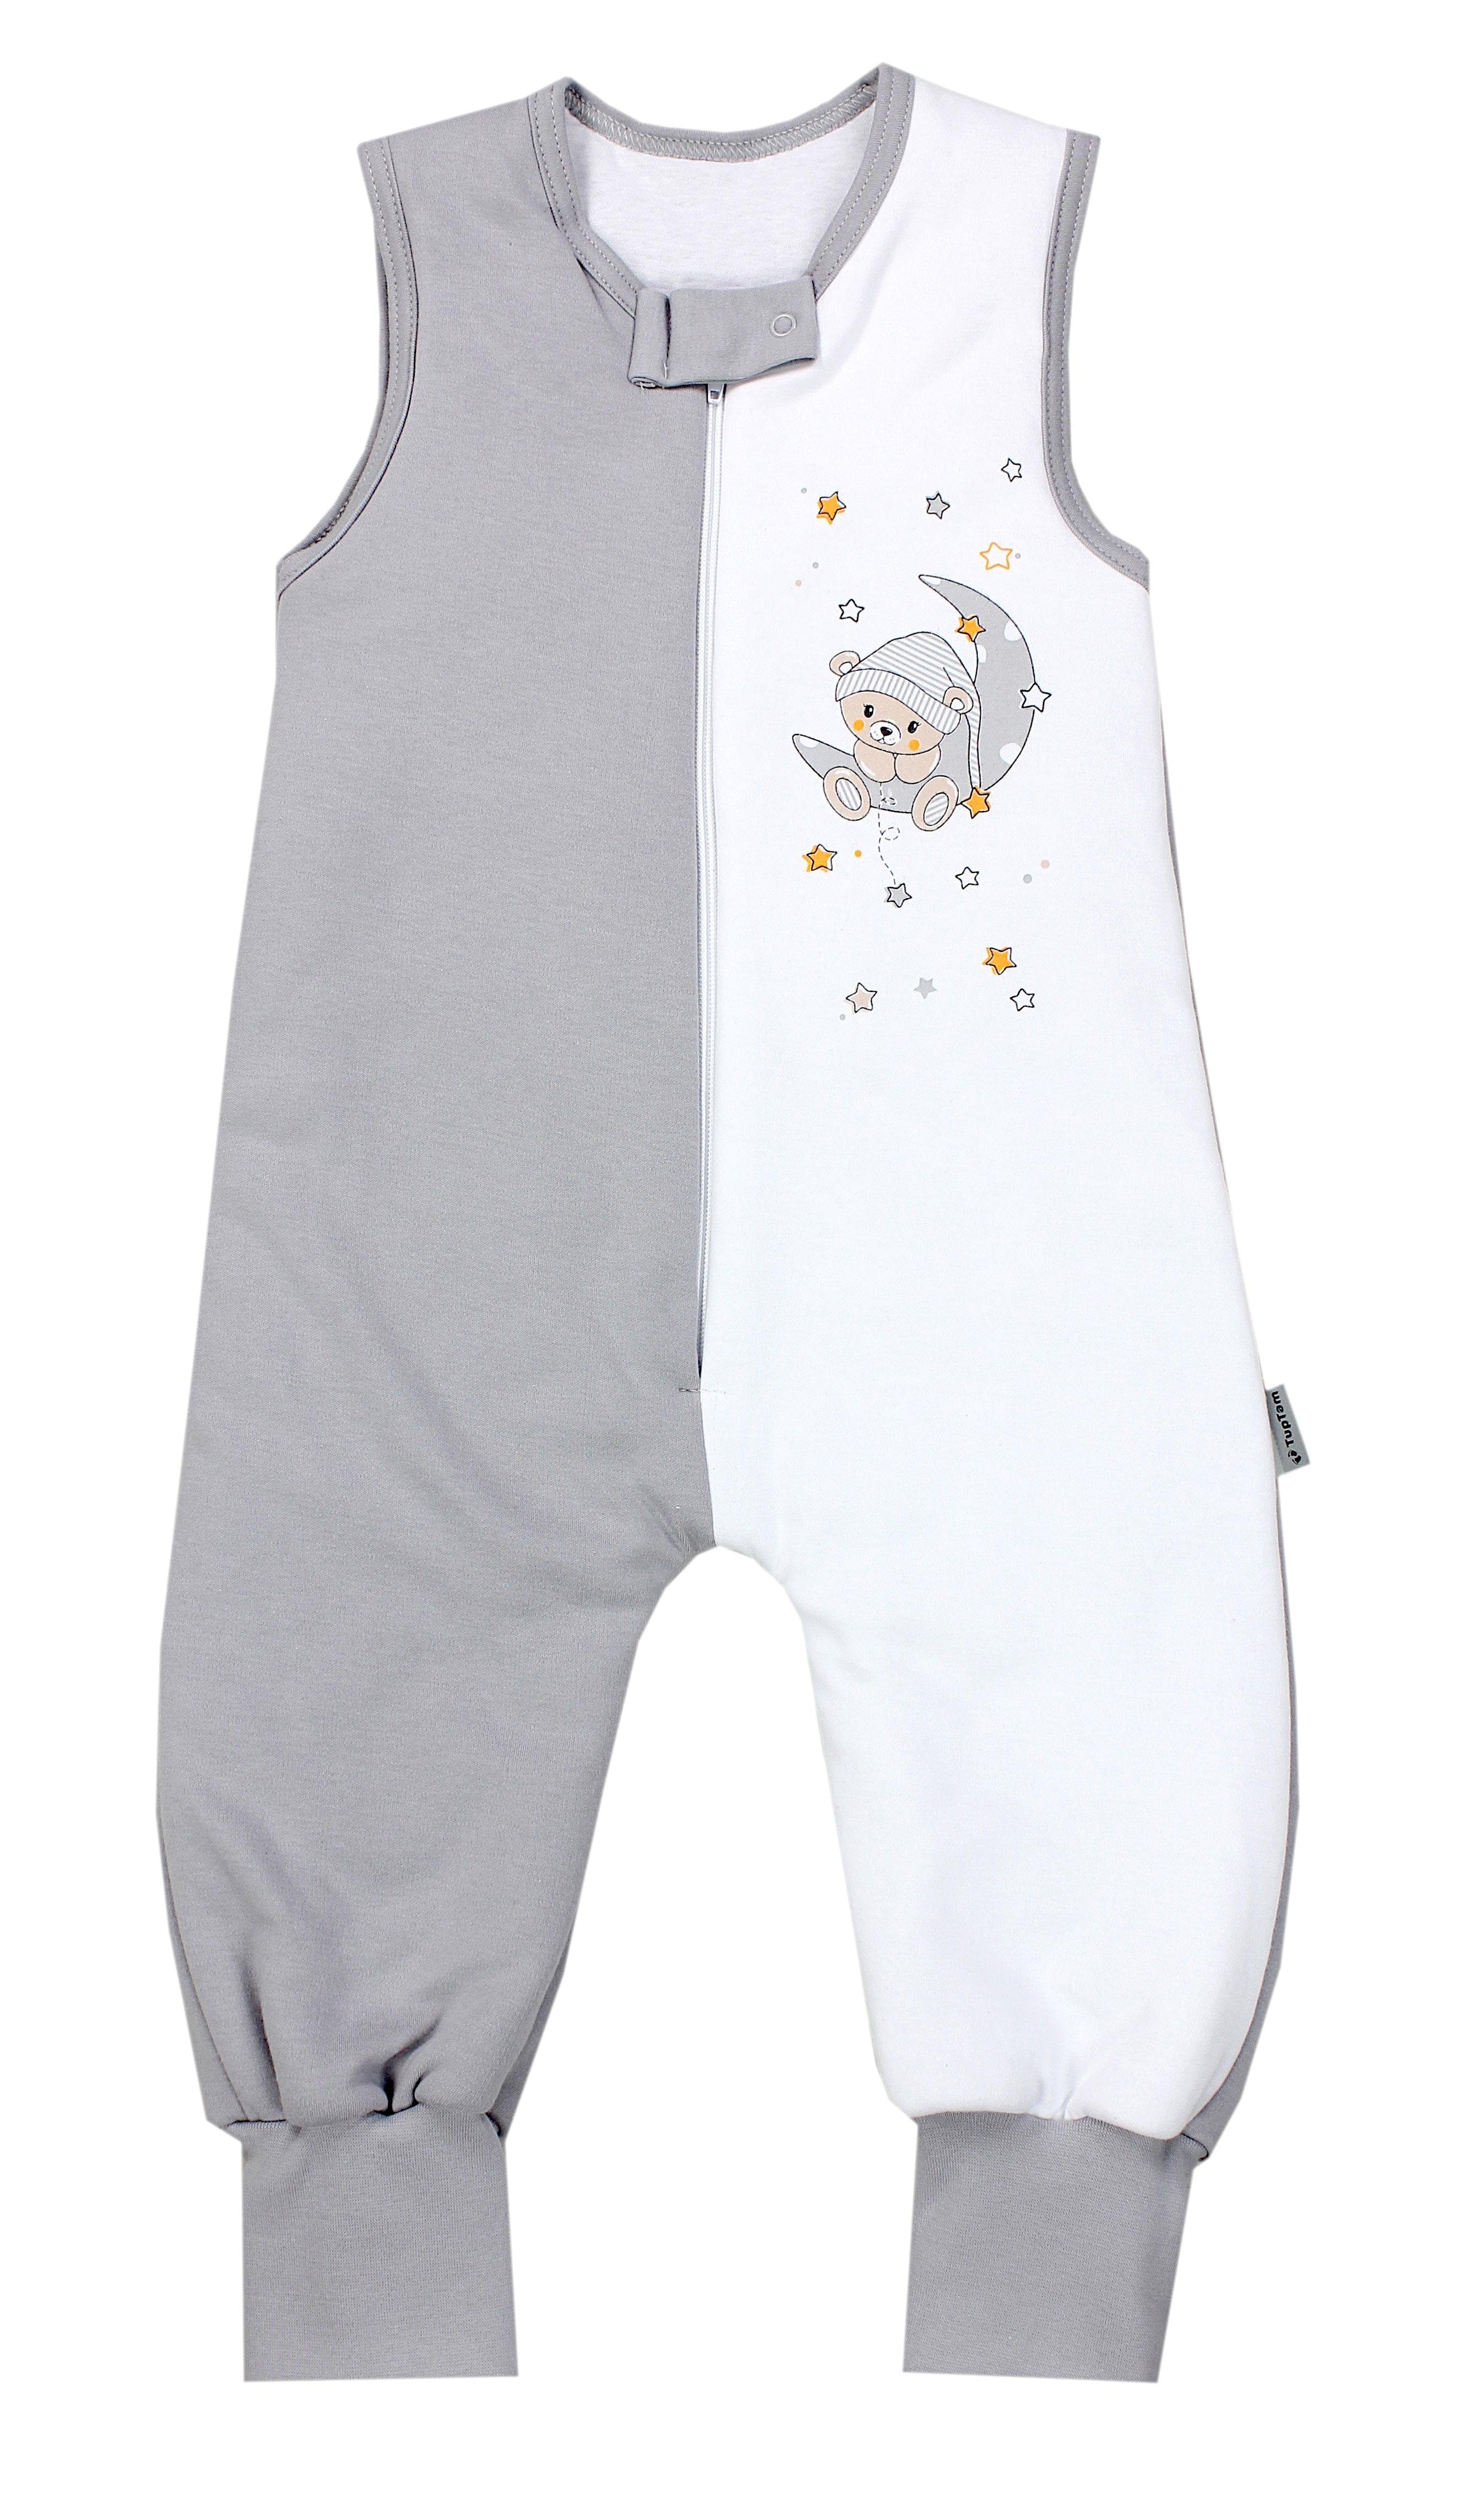 TupTam Babyschlafsack Winter Schlafsack mit Beinen OEKO-TEX zertifiziert 2,5 TOG Unisex Bär auf Mond / Grau